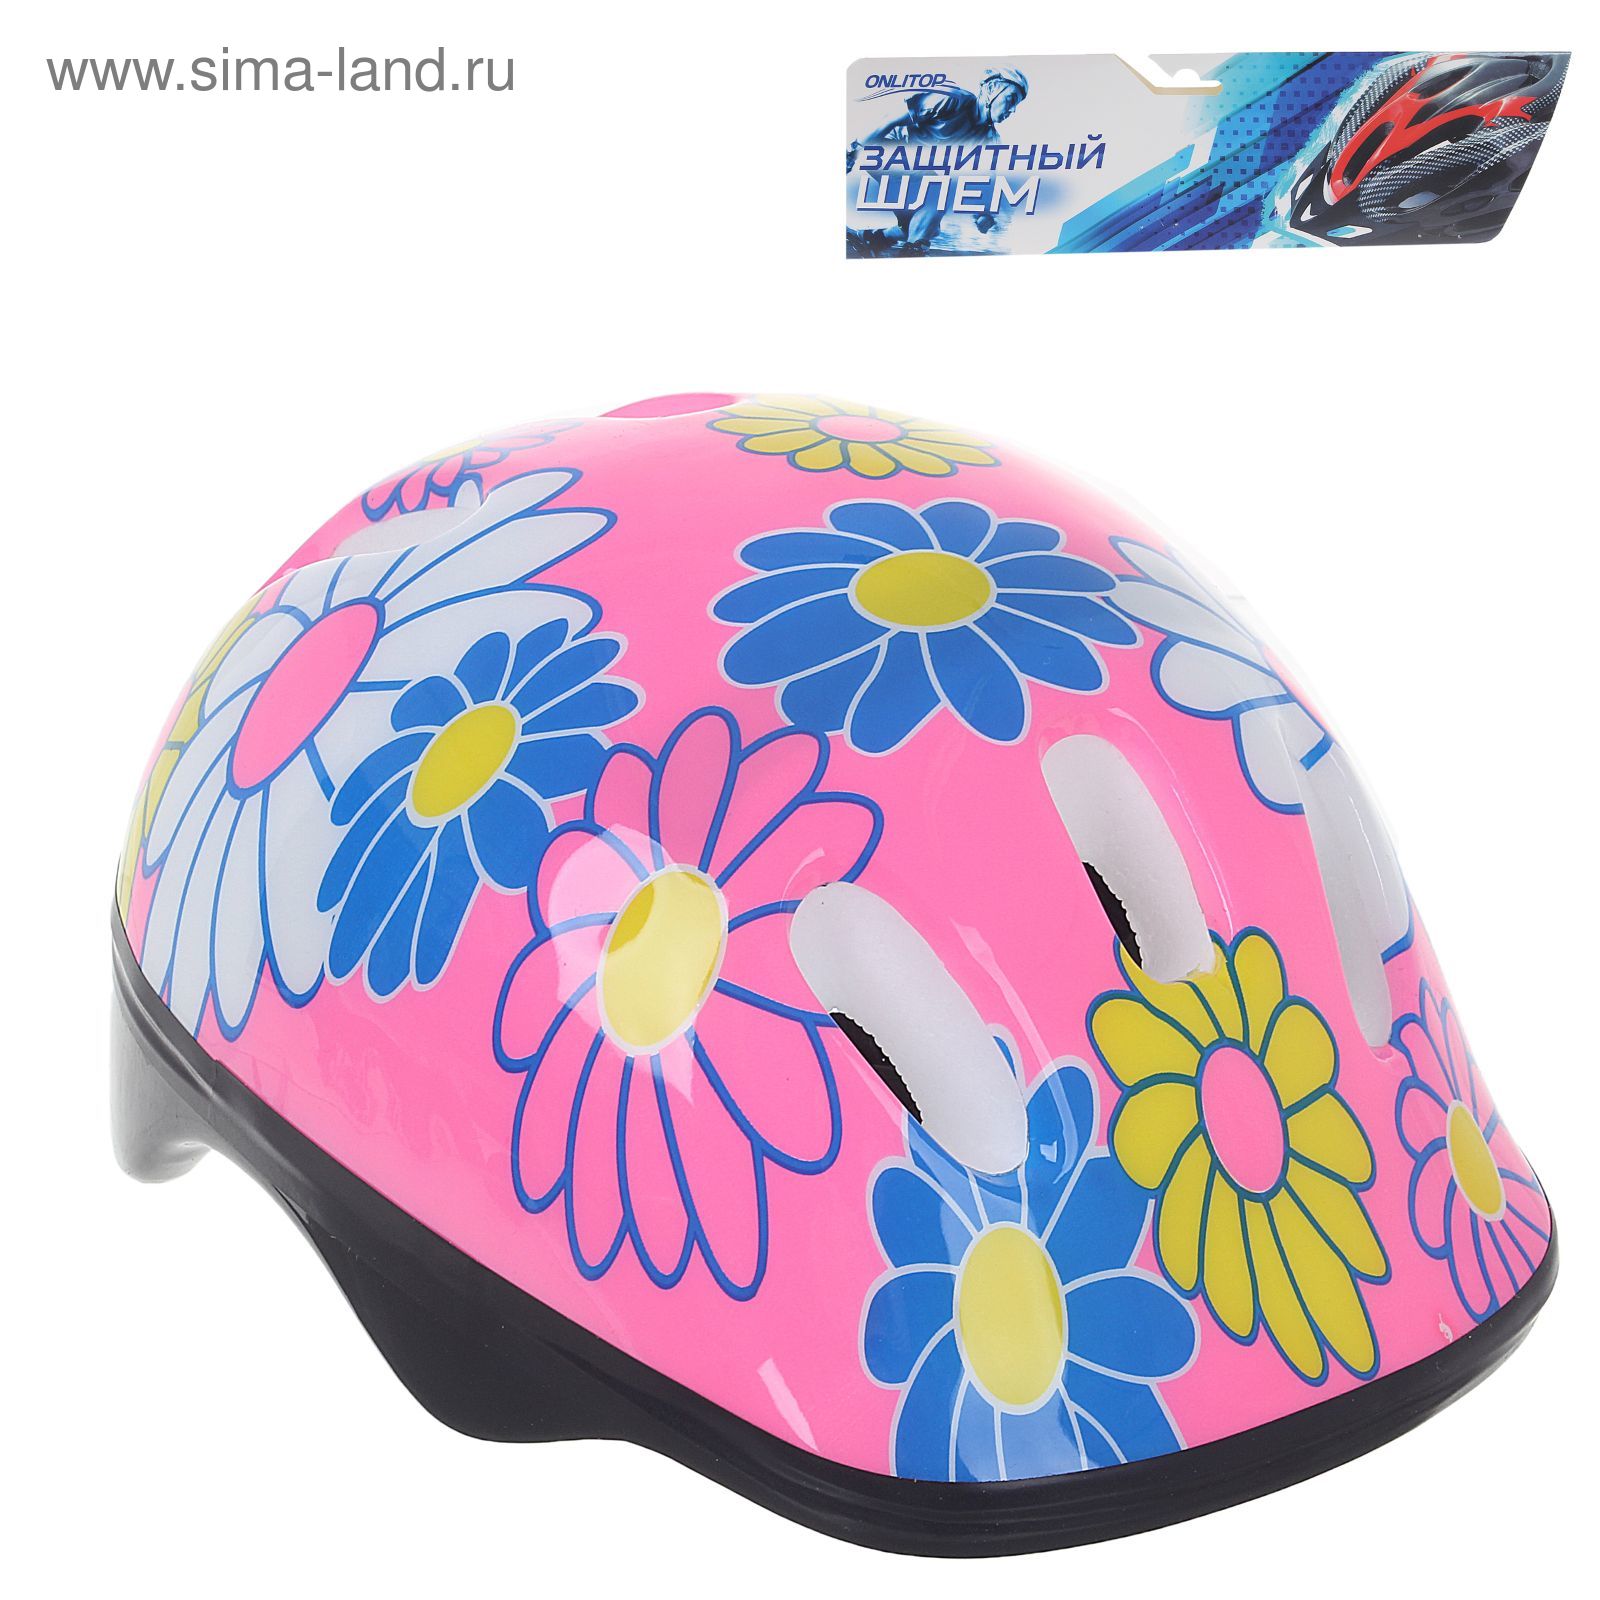 Шлем защитный OT-SH6 детский, р S (52-54 см), цвет: розовый